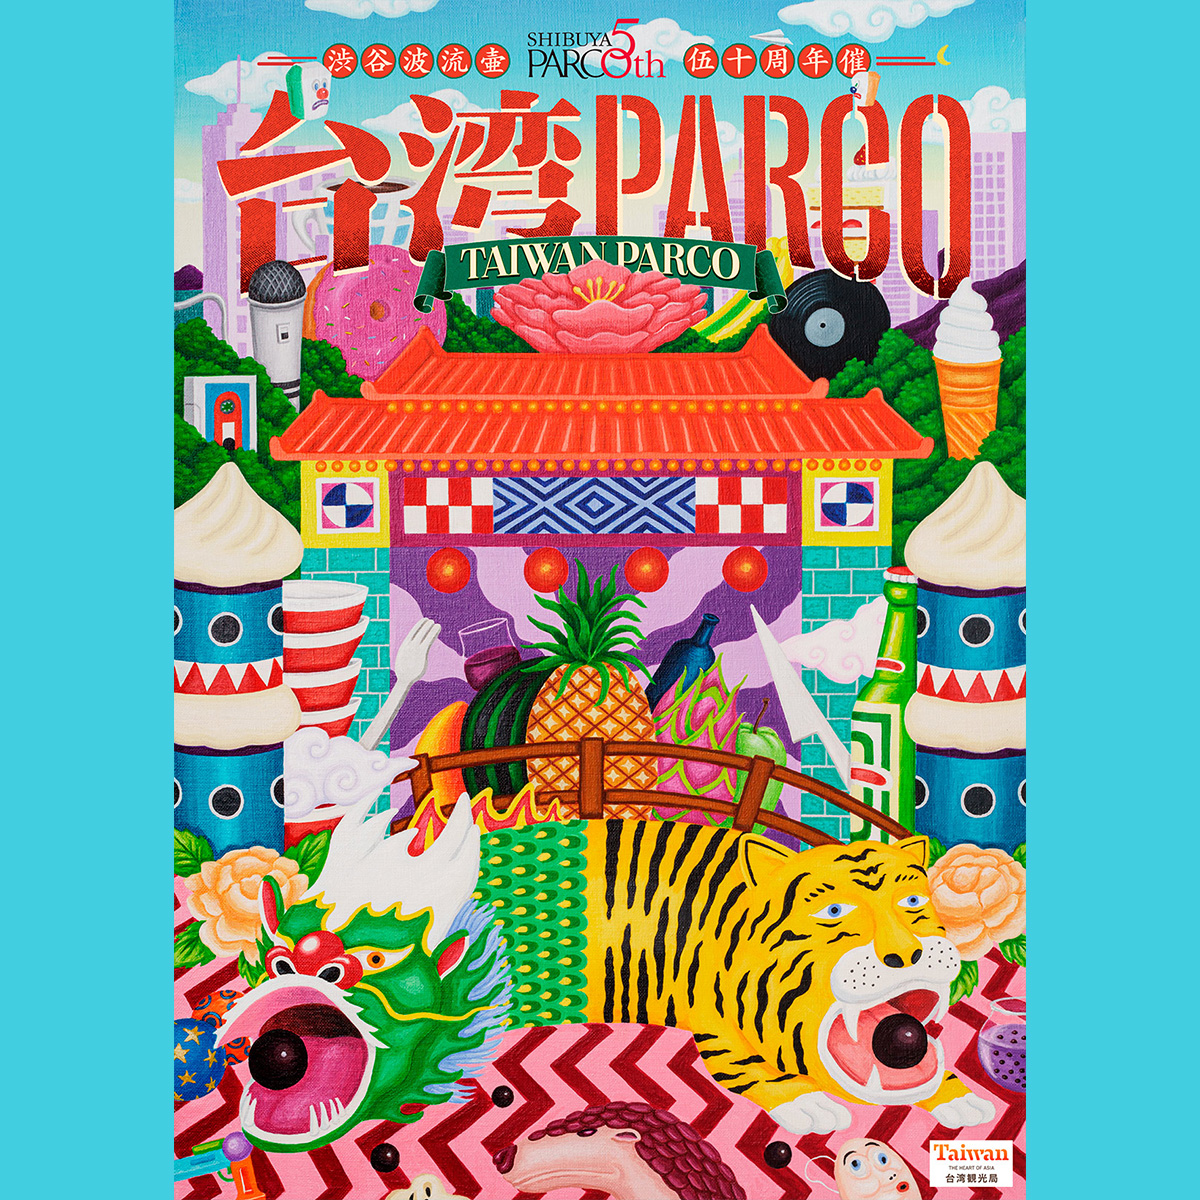 渋谷PARCOにて台湾のカルチャーやアートなどを堪能できるイベント「台湾PARCO」が開催...